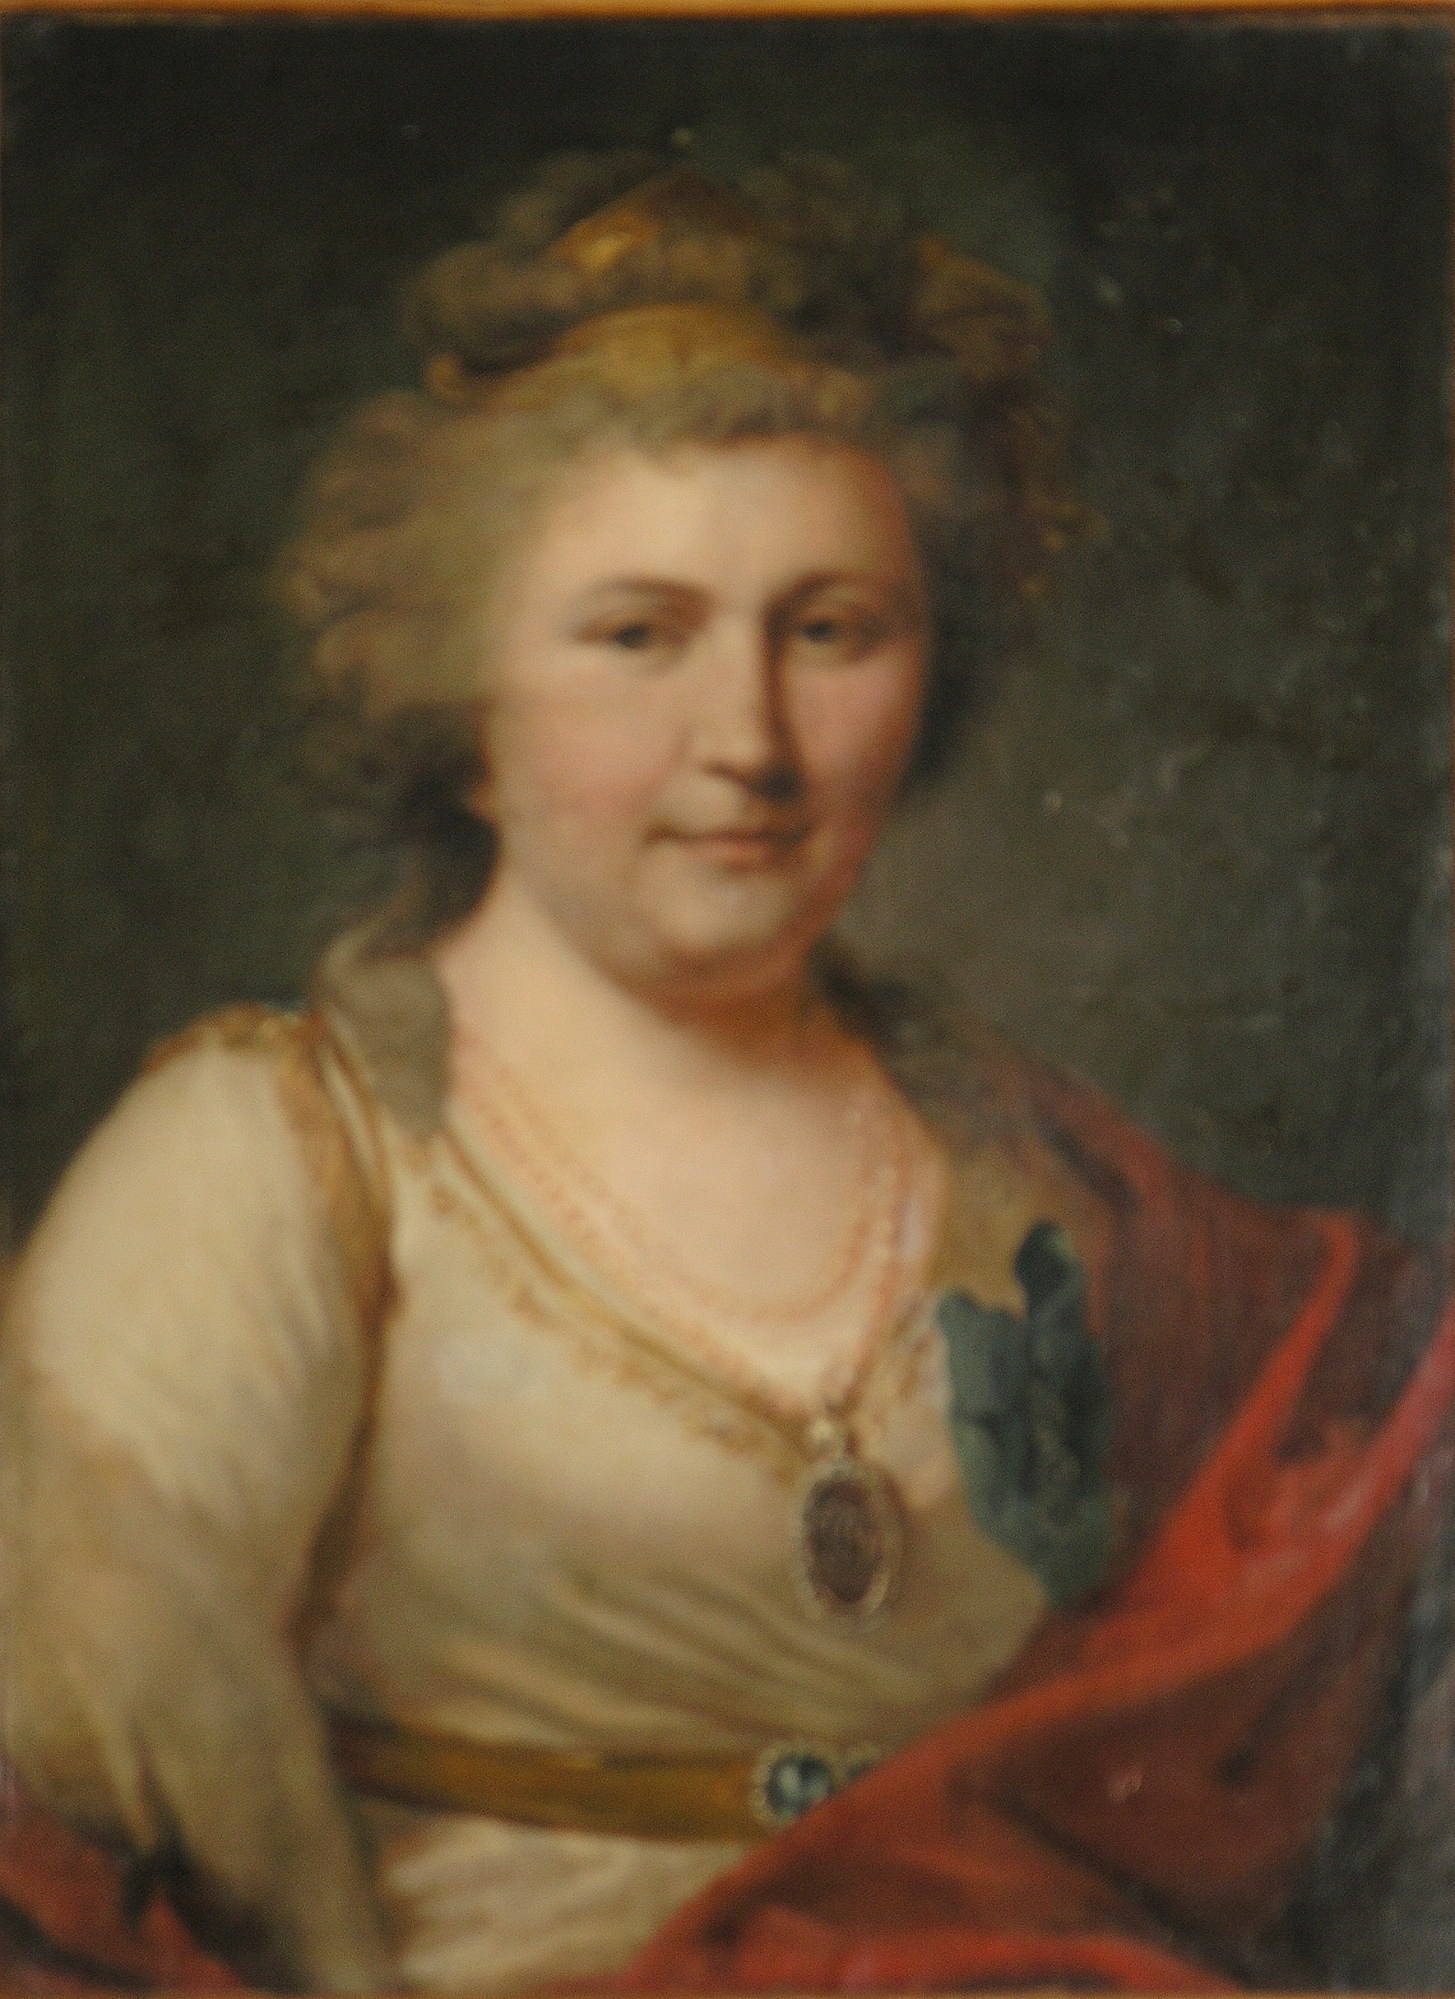 Portretul Varvarei Vasilyevna Golytsina, născută Engelhardt